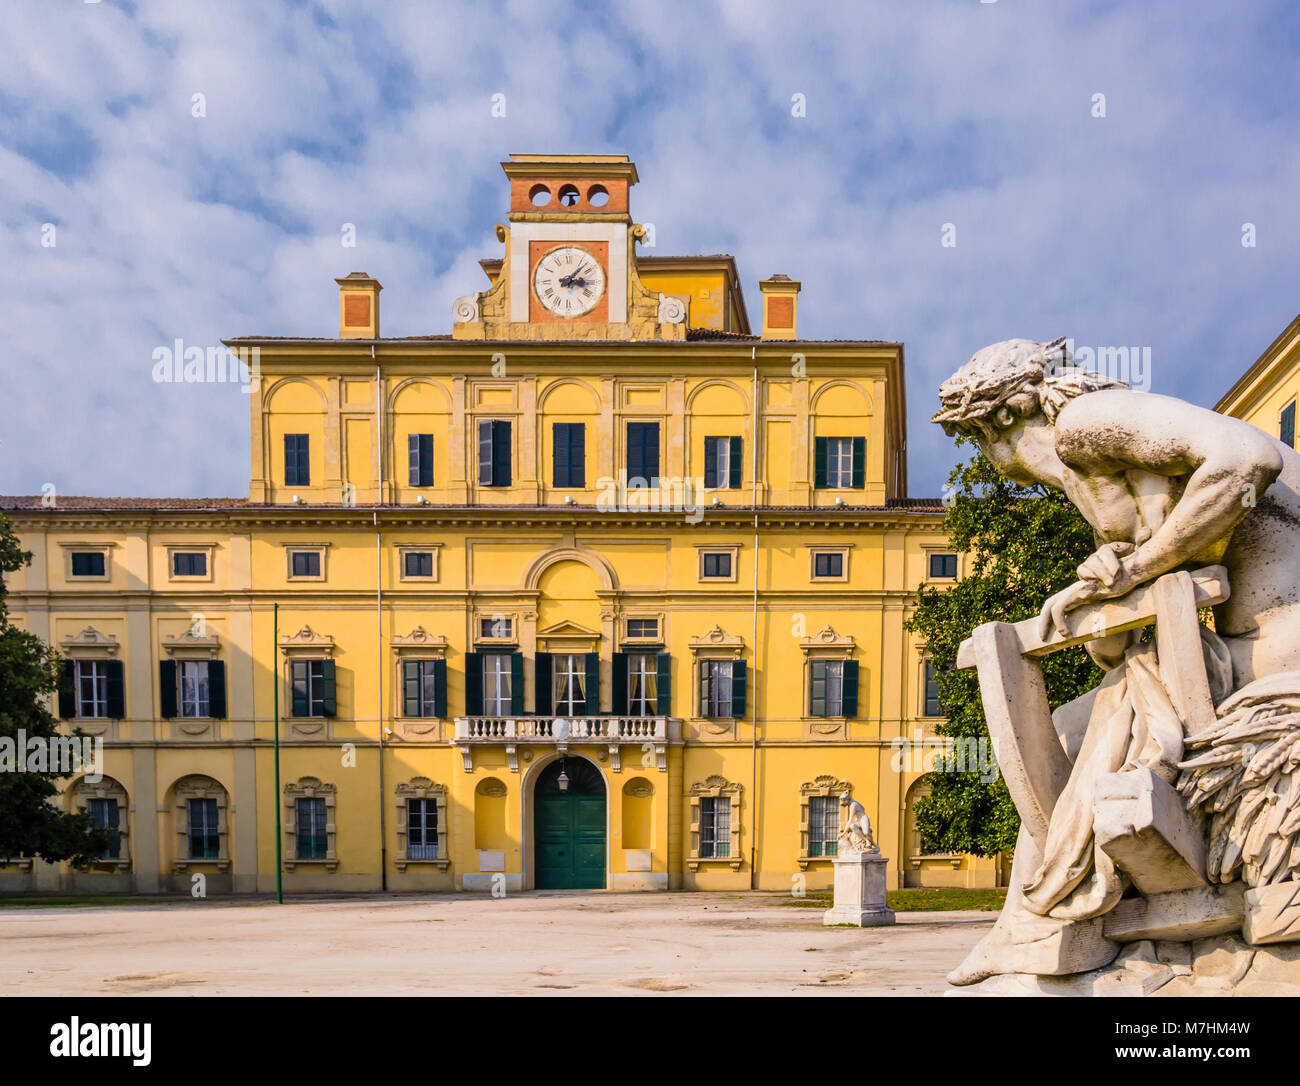 Einen atemberaubenden Blick auf die herzogliche Garden Palace, Parma, Italien Stockfoto